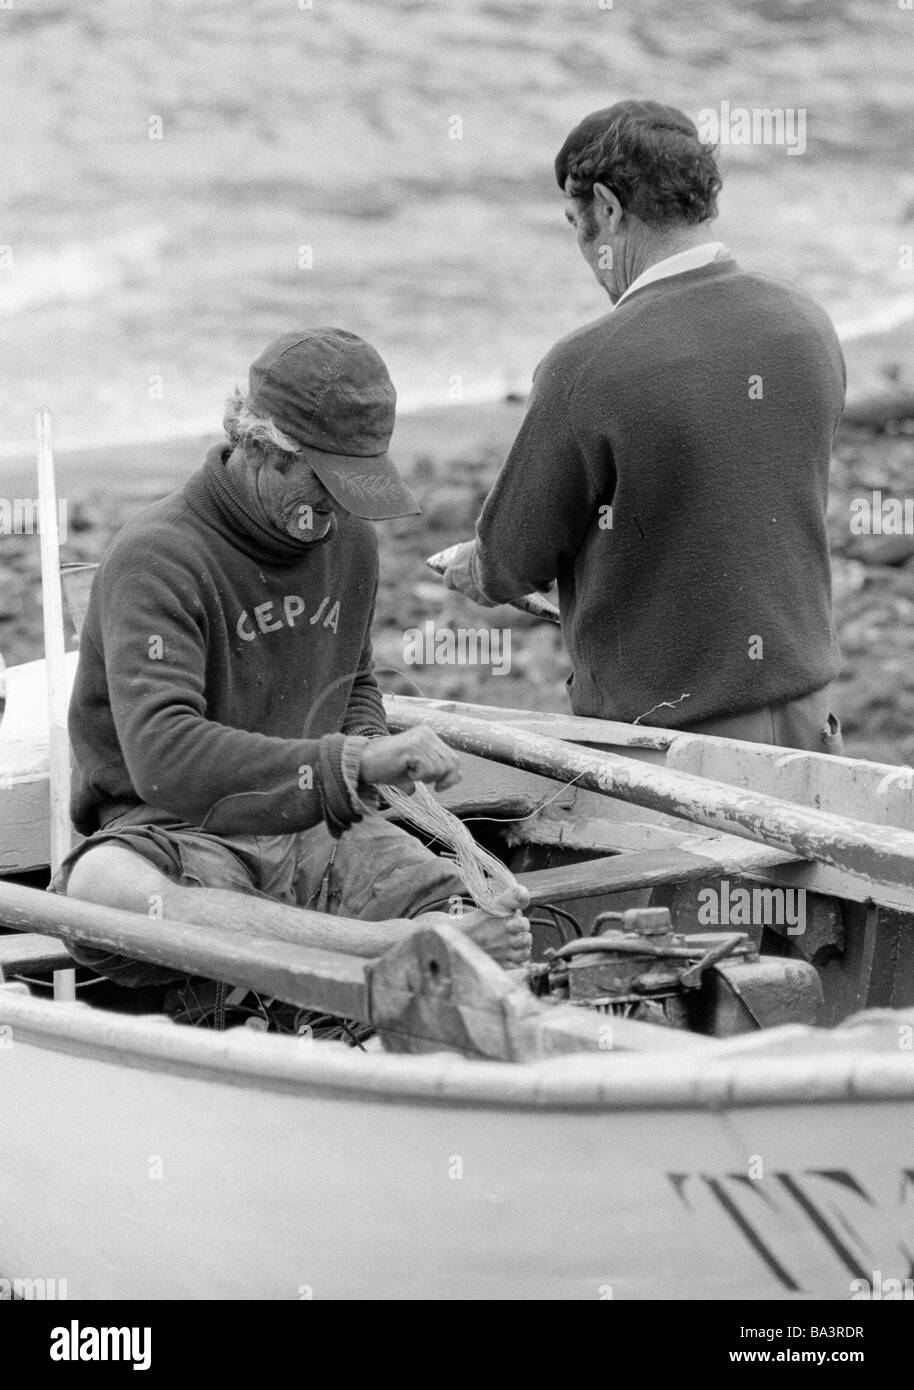 Années 1980, photo en noir et blanc, de l'économie, du port de pêche, pêcheur assis dans un bateau réparations un filet de pêche, de 60 à 70 ans, l'Espagne, Îles Canaries, Tenerife, Puerto de la Cruz Banque D'Images